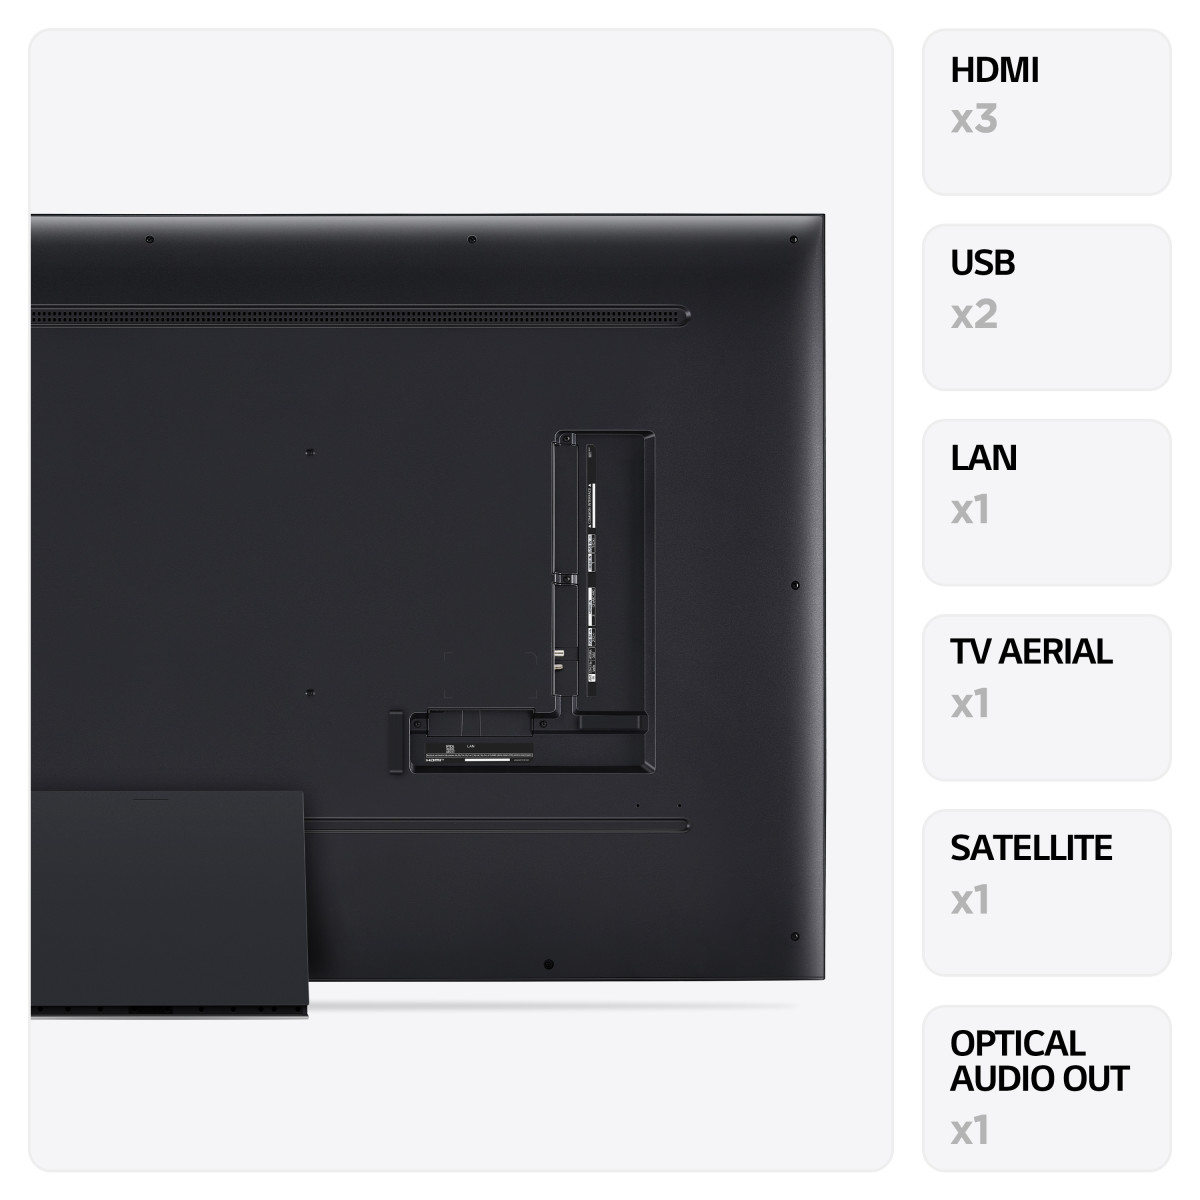 LG LED UR91 75 4K Smart TV